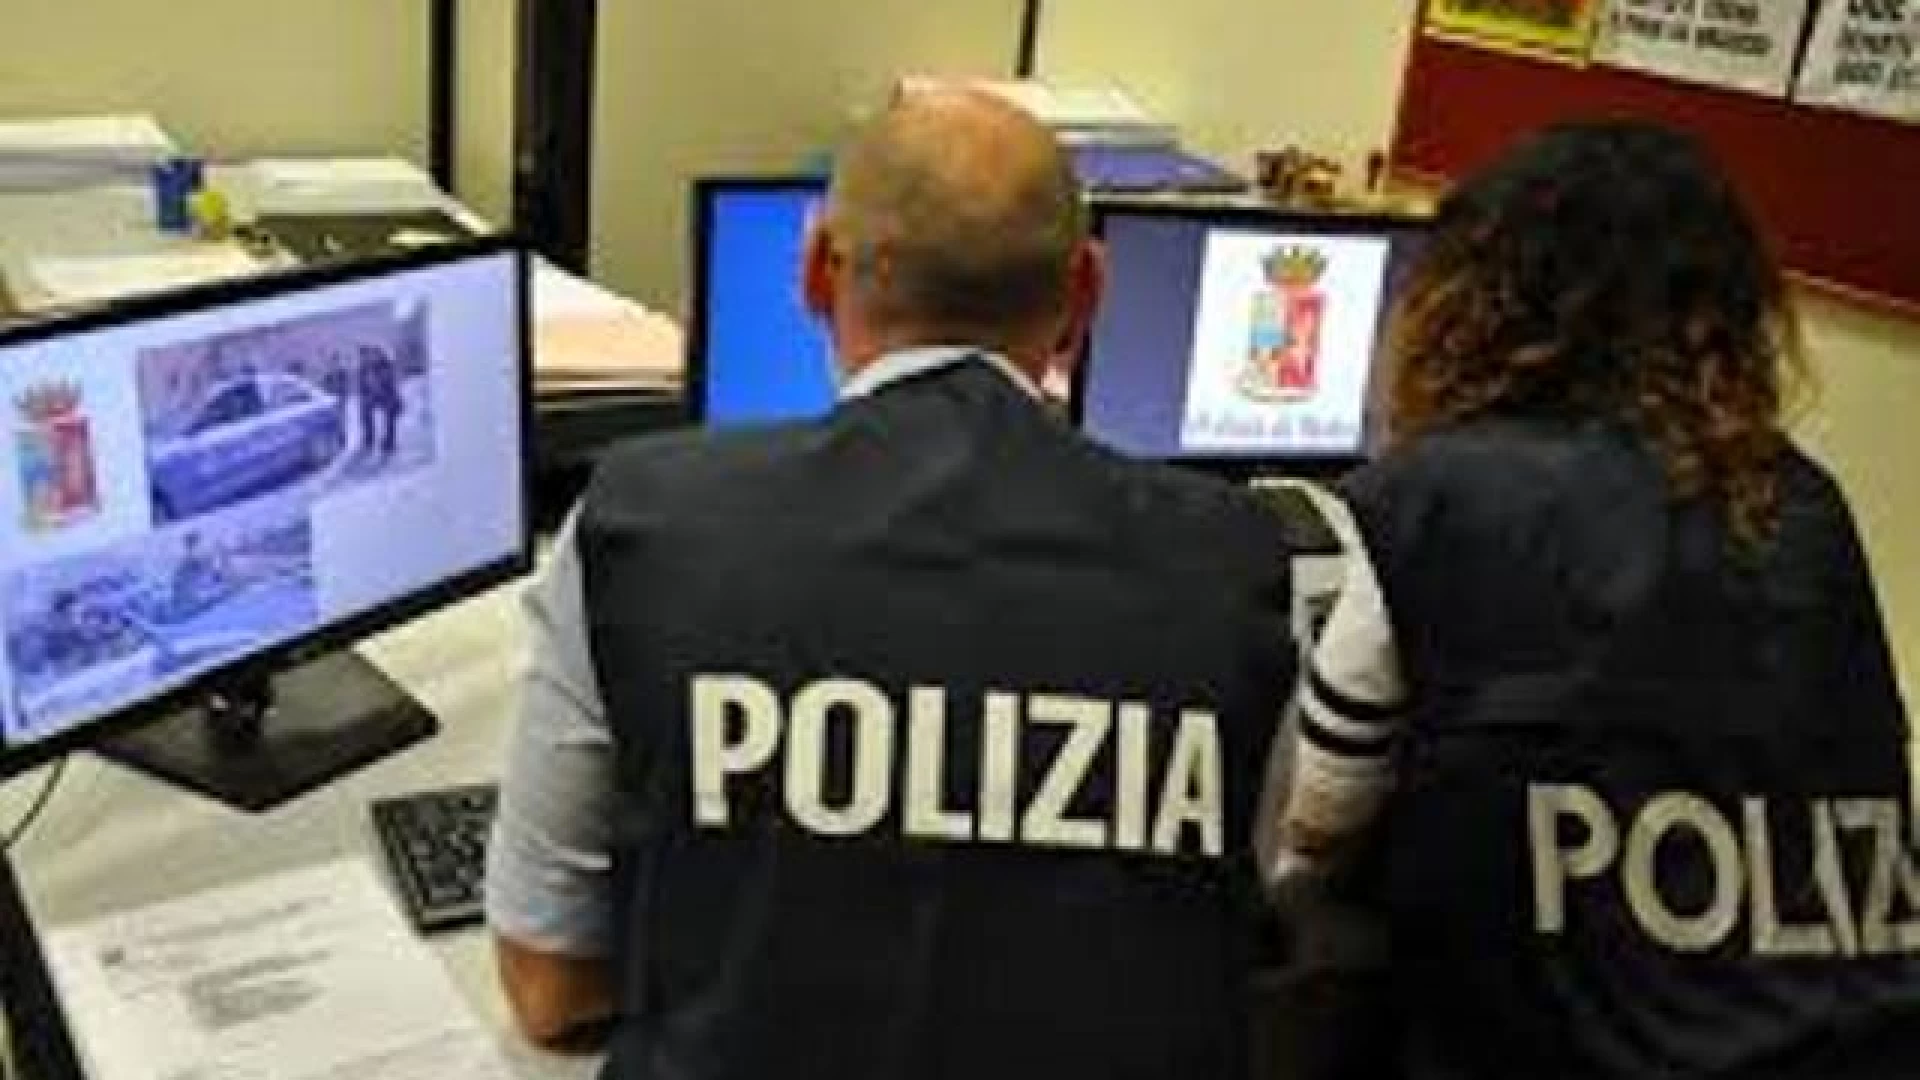 Isernia: la Polizia di Stato denuncia un 63enne di Pisa per truffa on-line. Il Questore emette anche 5 fogli di via obbligatori.